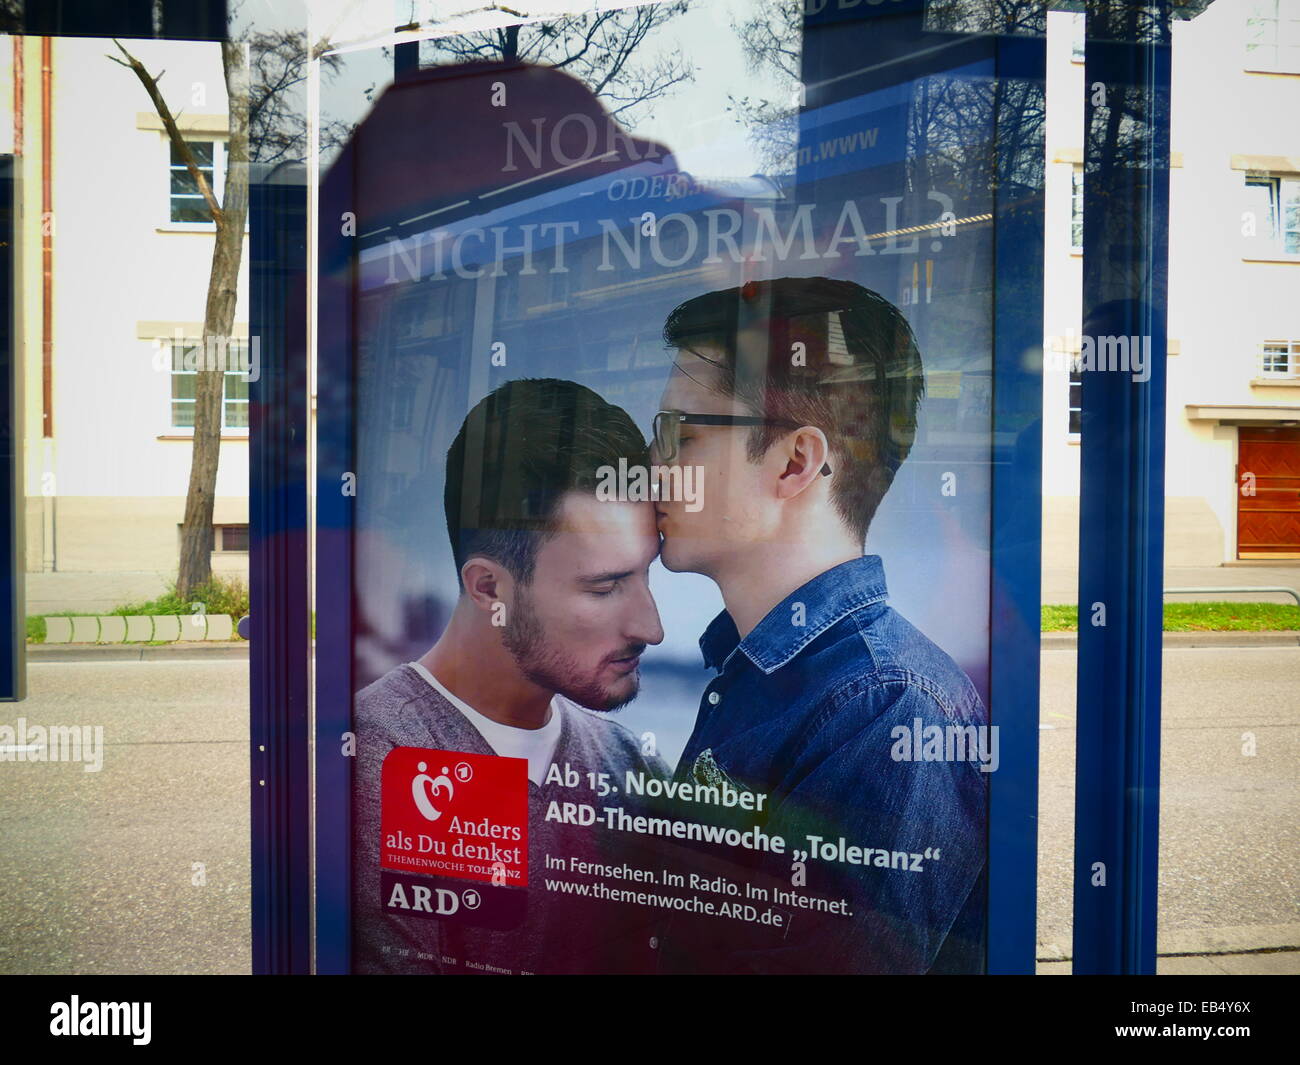 Alemania una campaña por la tolerancia Foto de stock